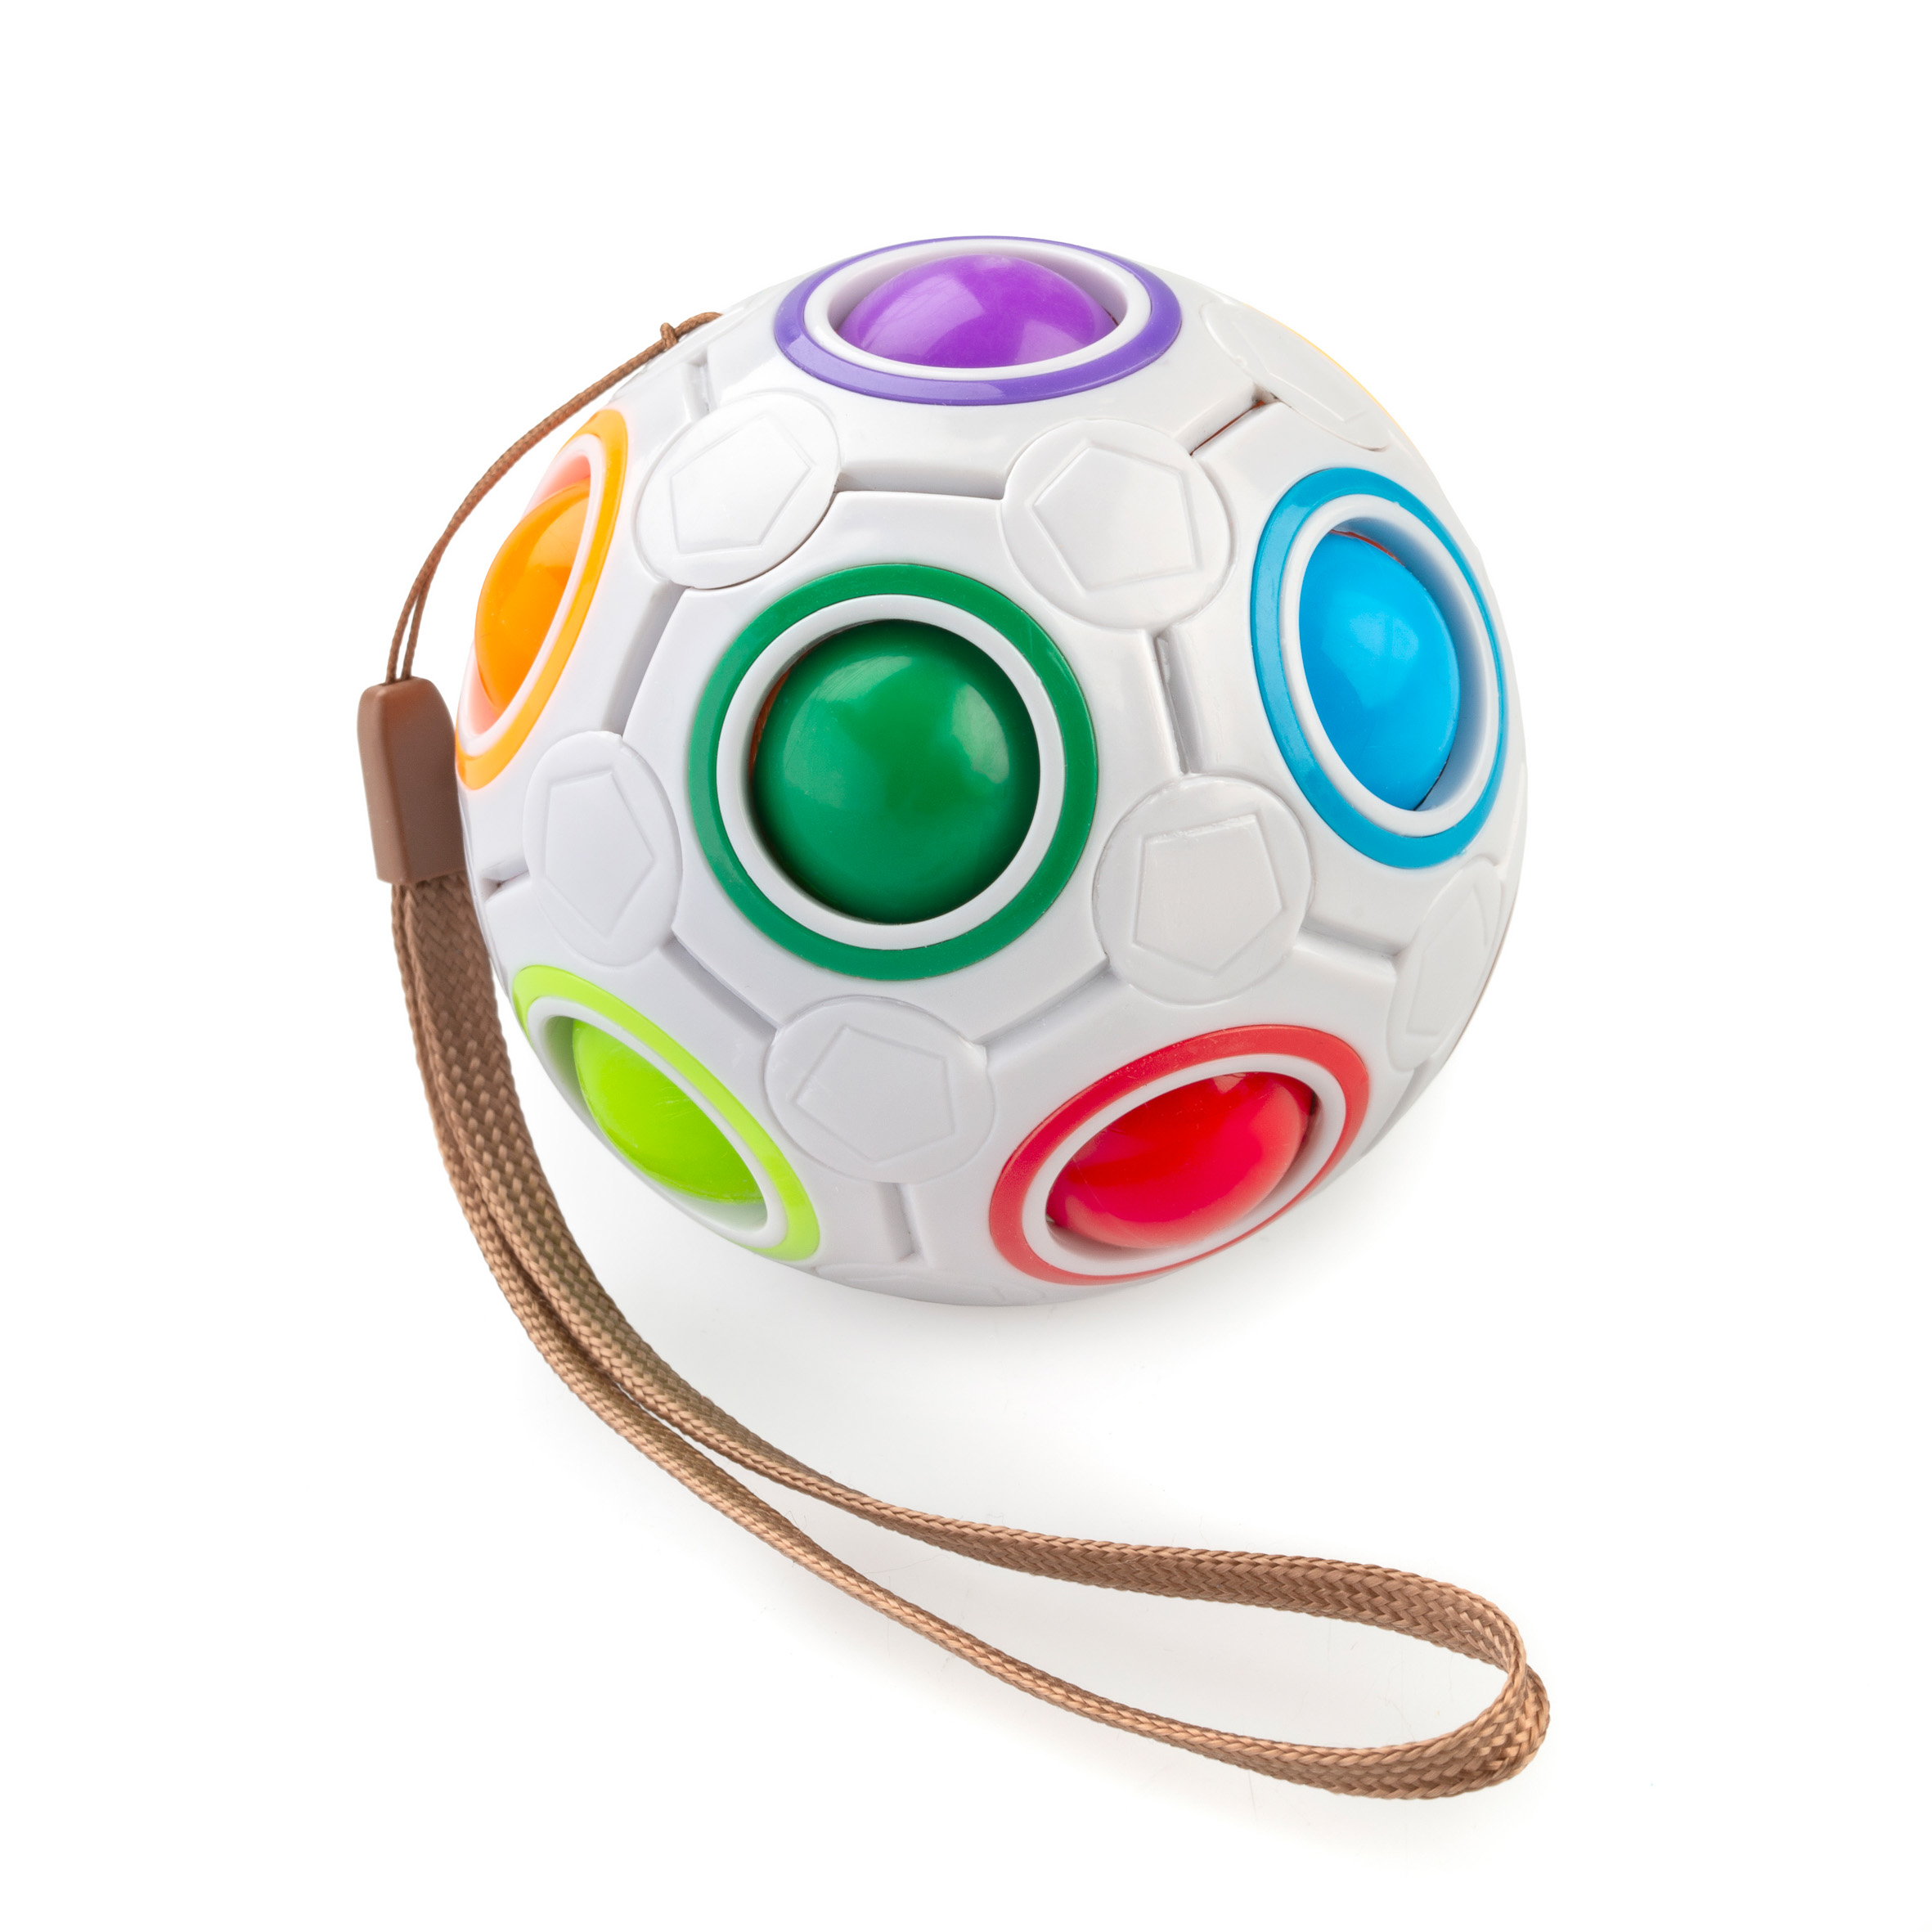 3D Zauberwürfel Ball   Kinder Lernen Pädagogisches Spielzeug Spaß Spielen 